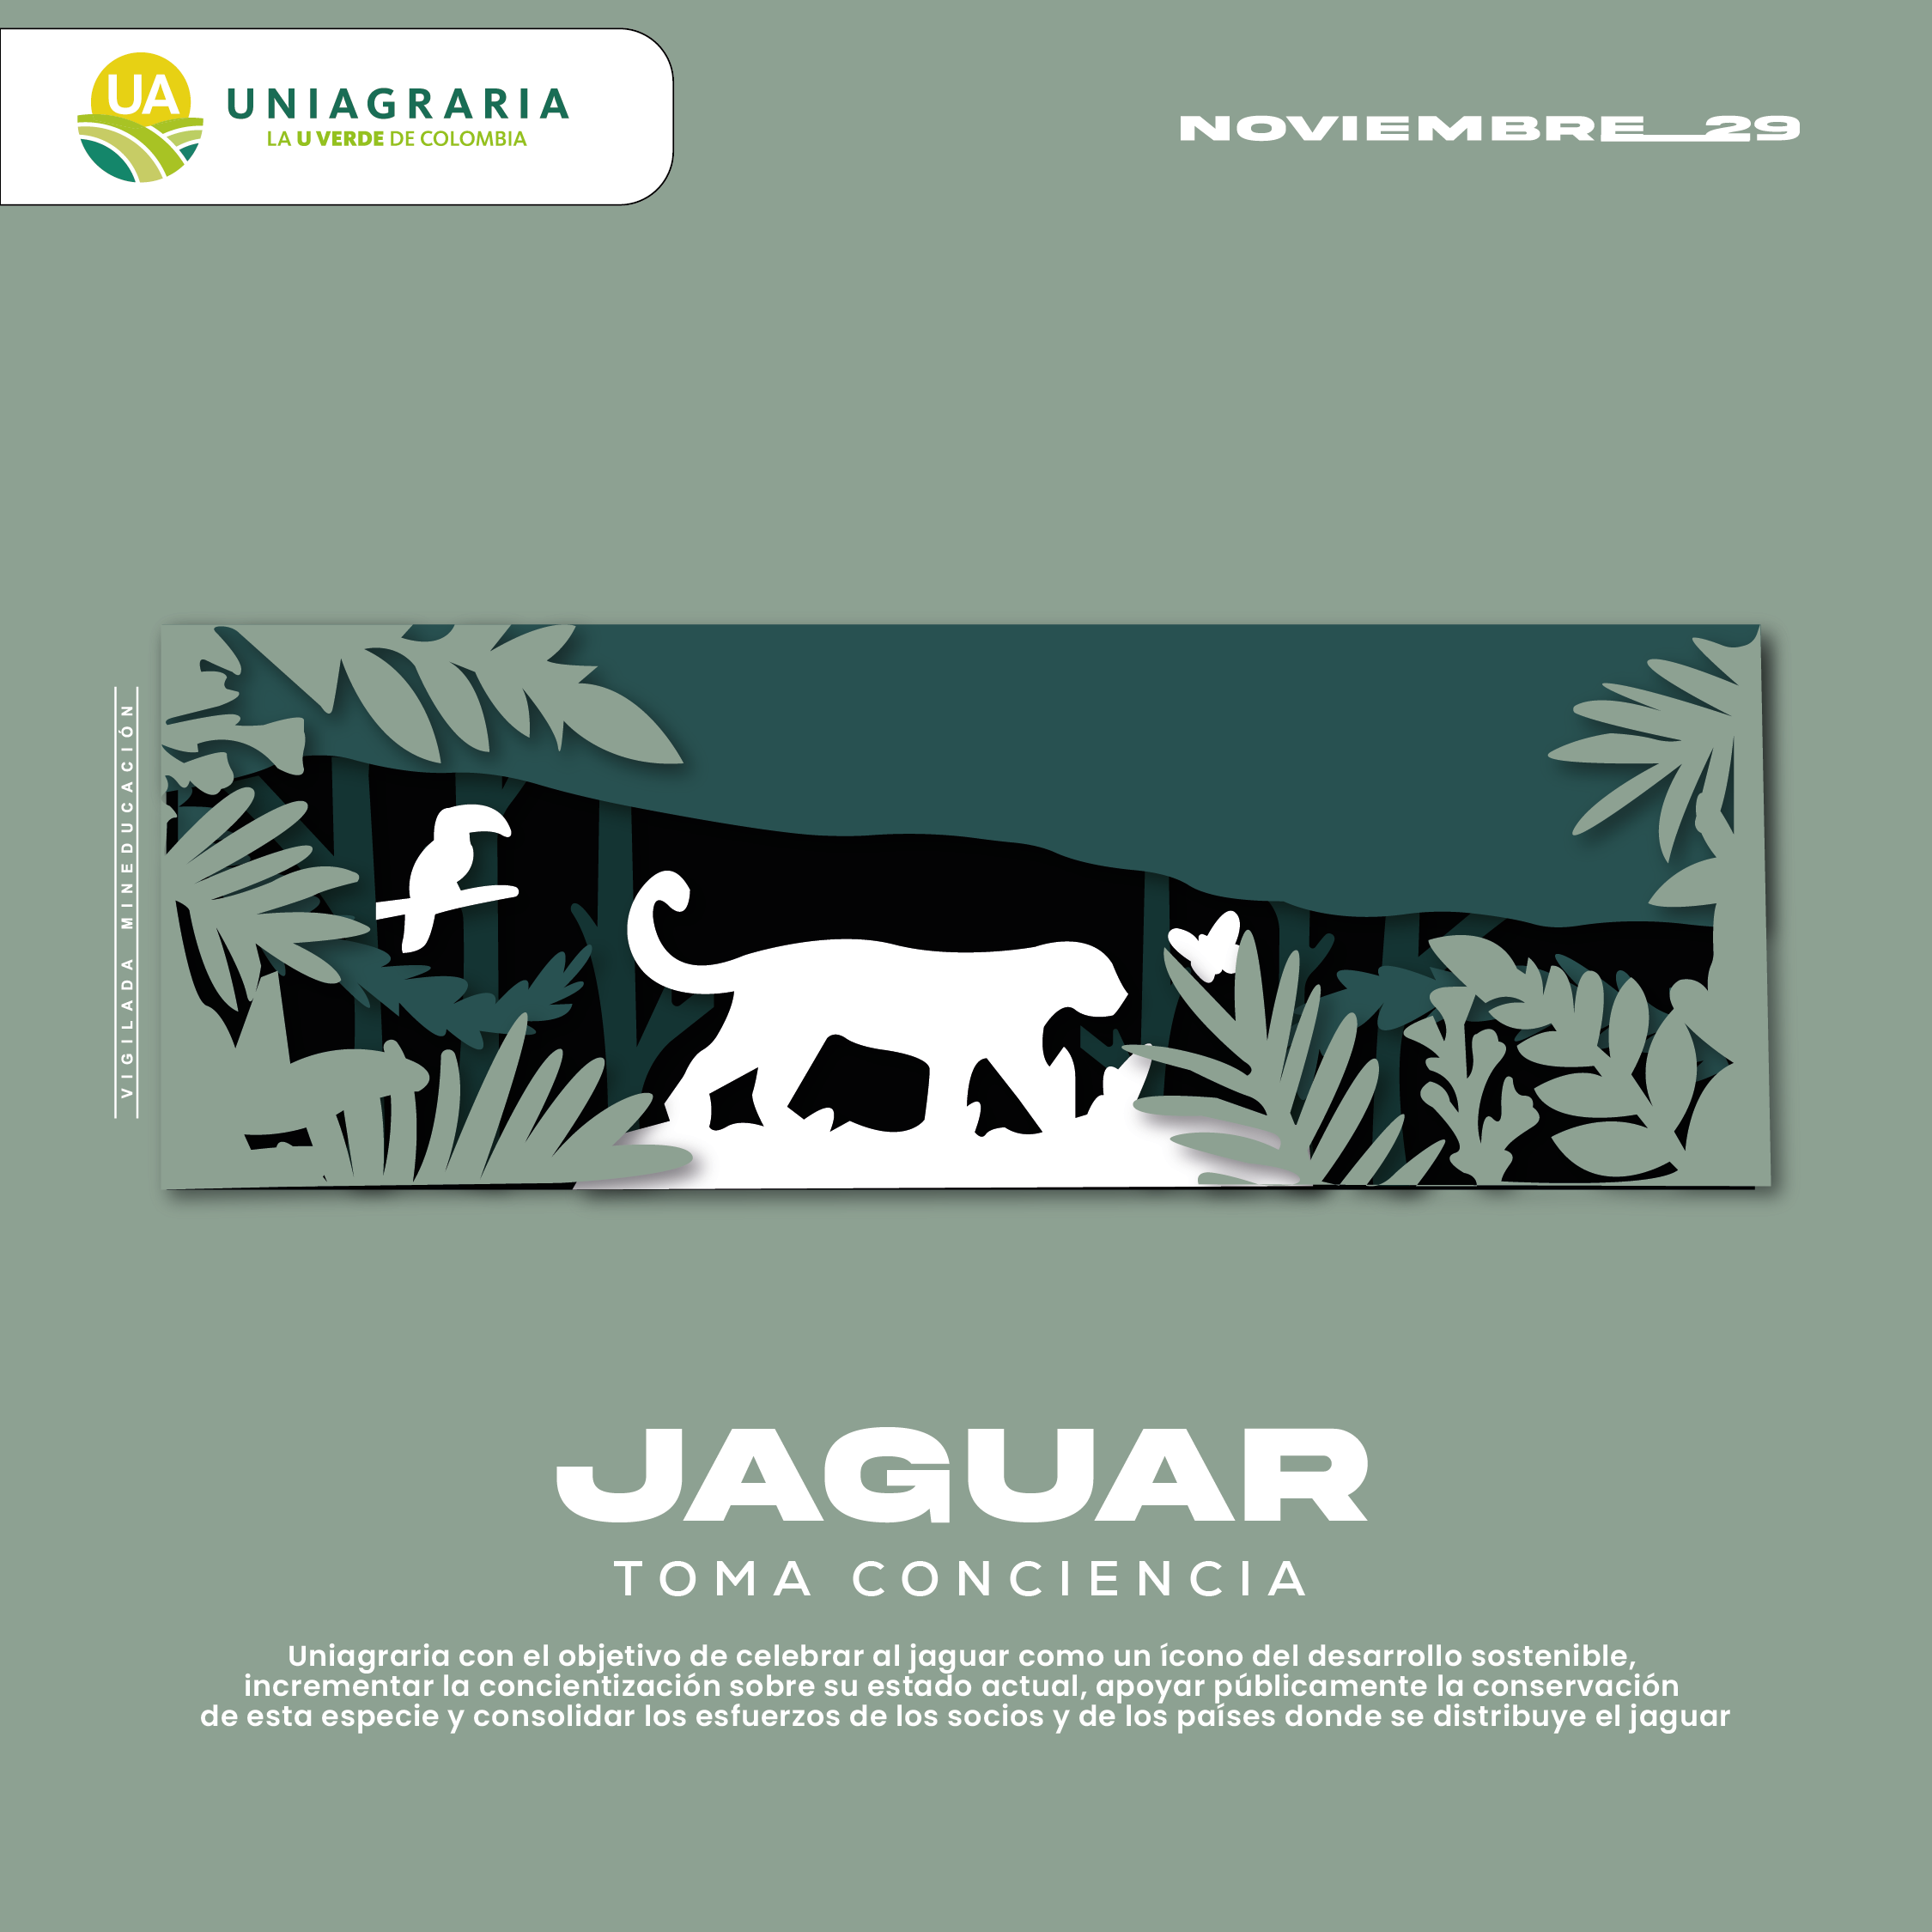 ¡Toma conciencia! Uniagraria te invita celebrar el día del Jaguar